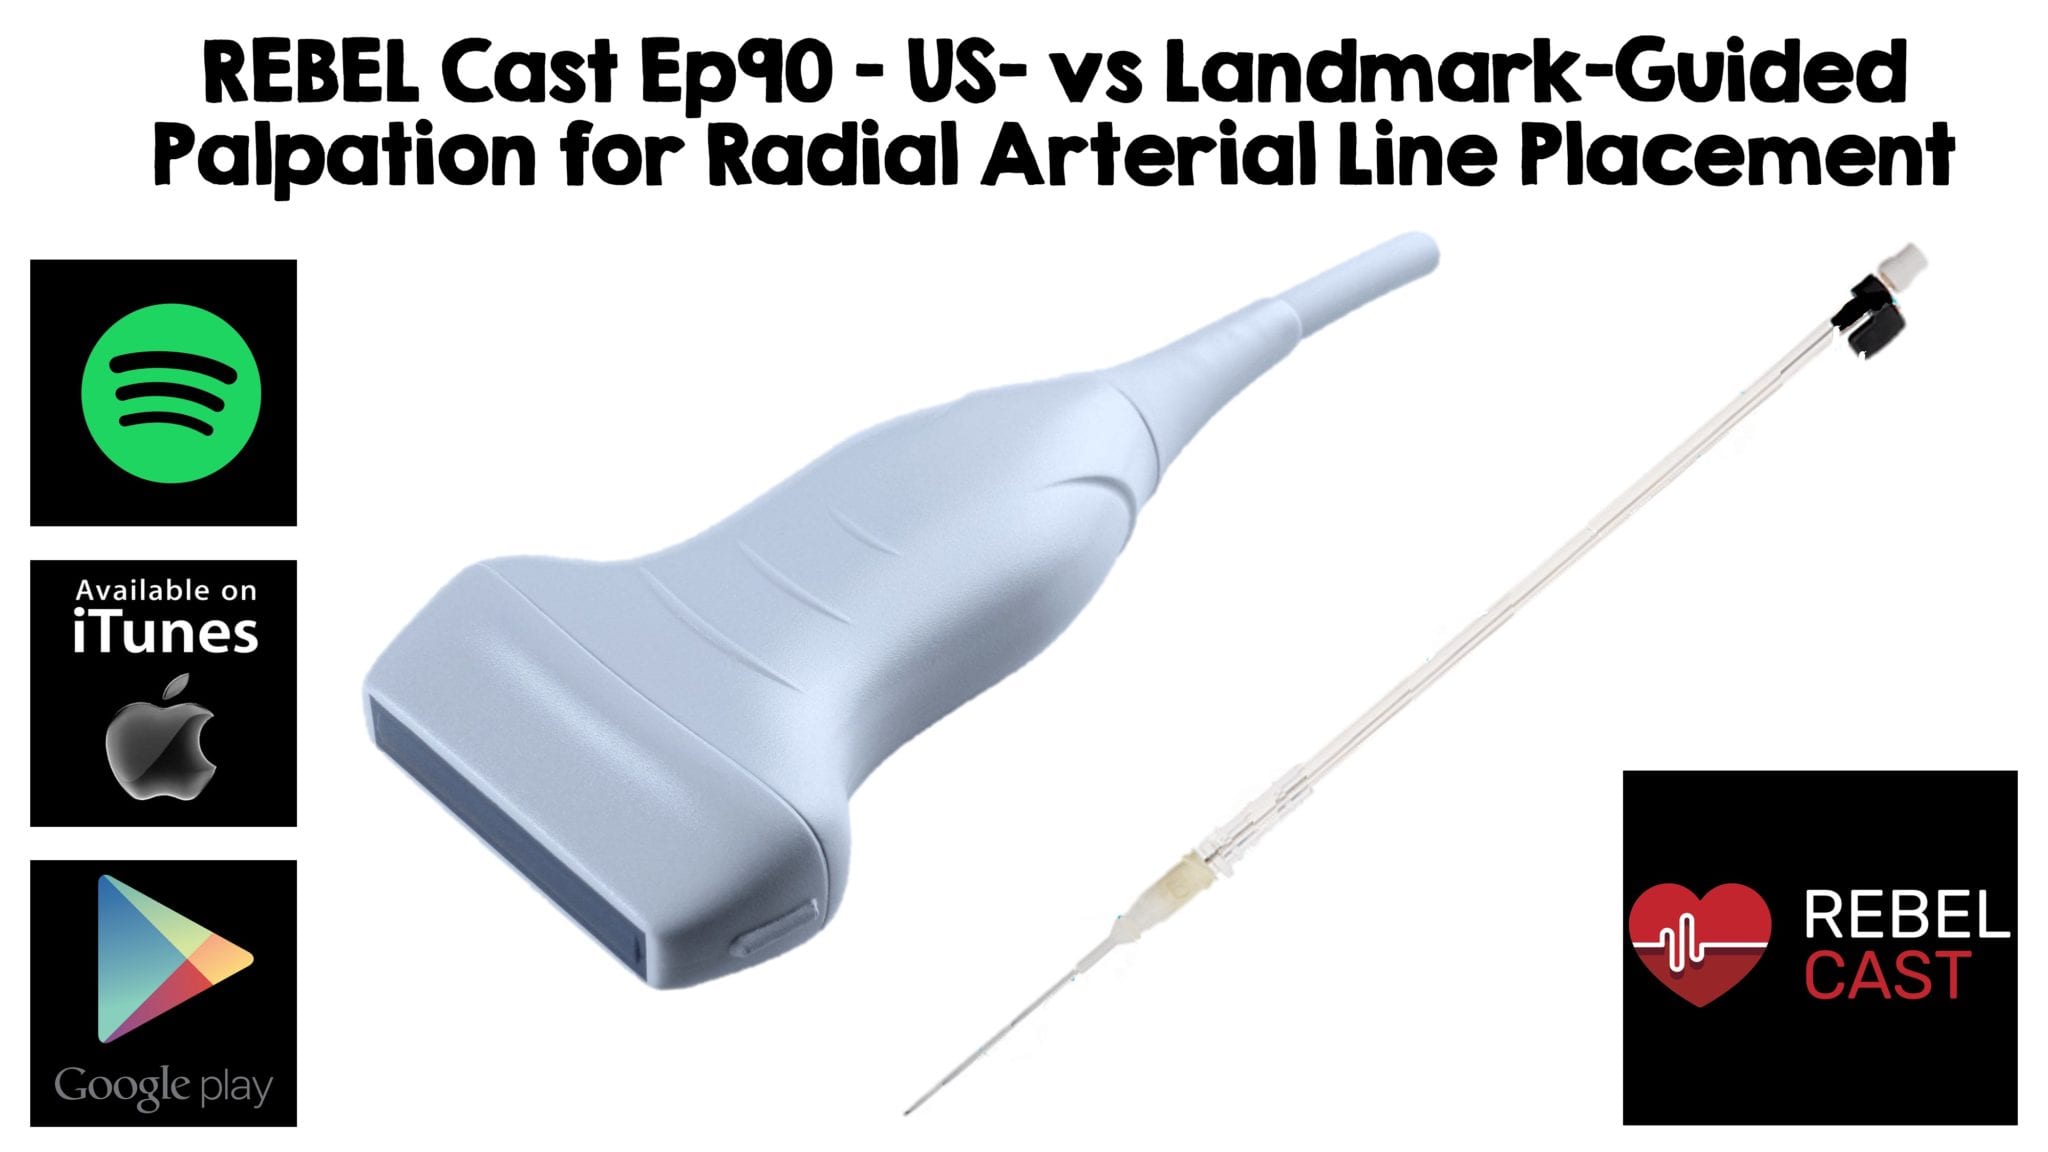 US vs Landmark for Radial Arterial Lines